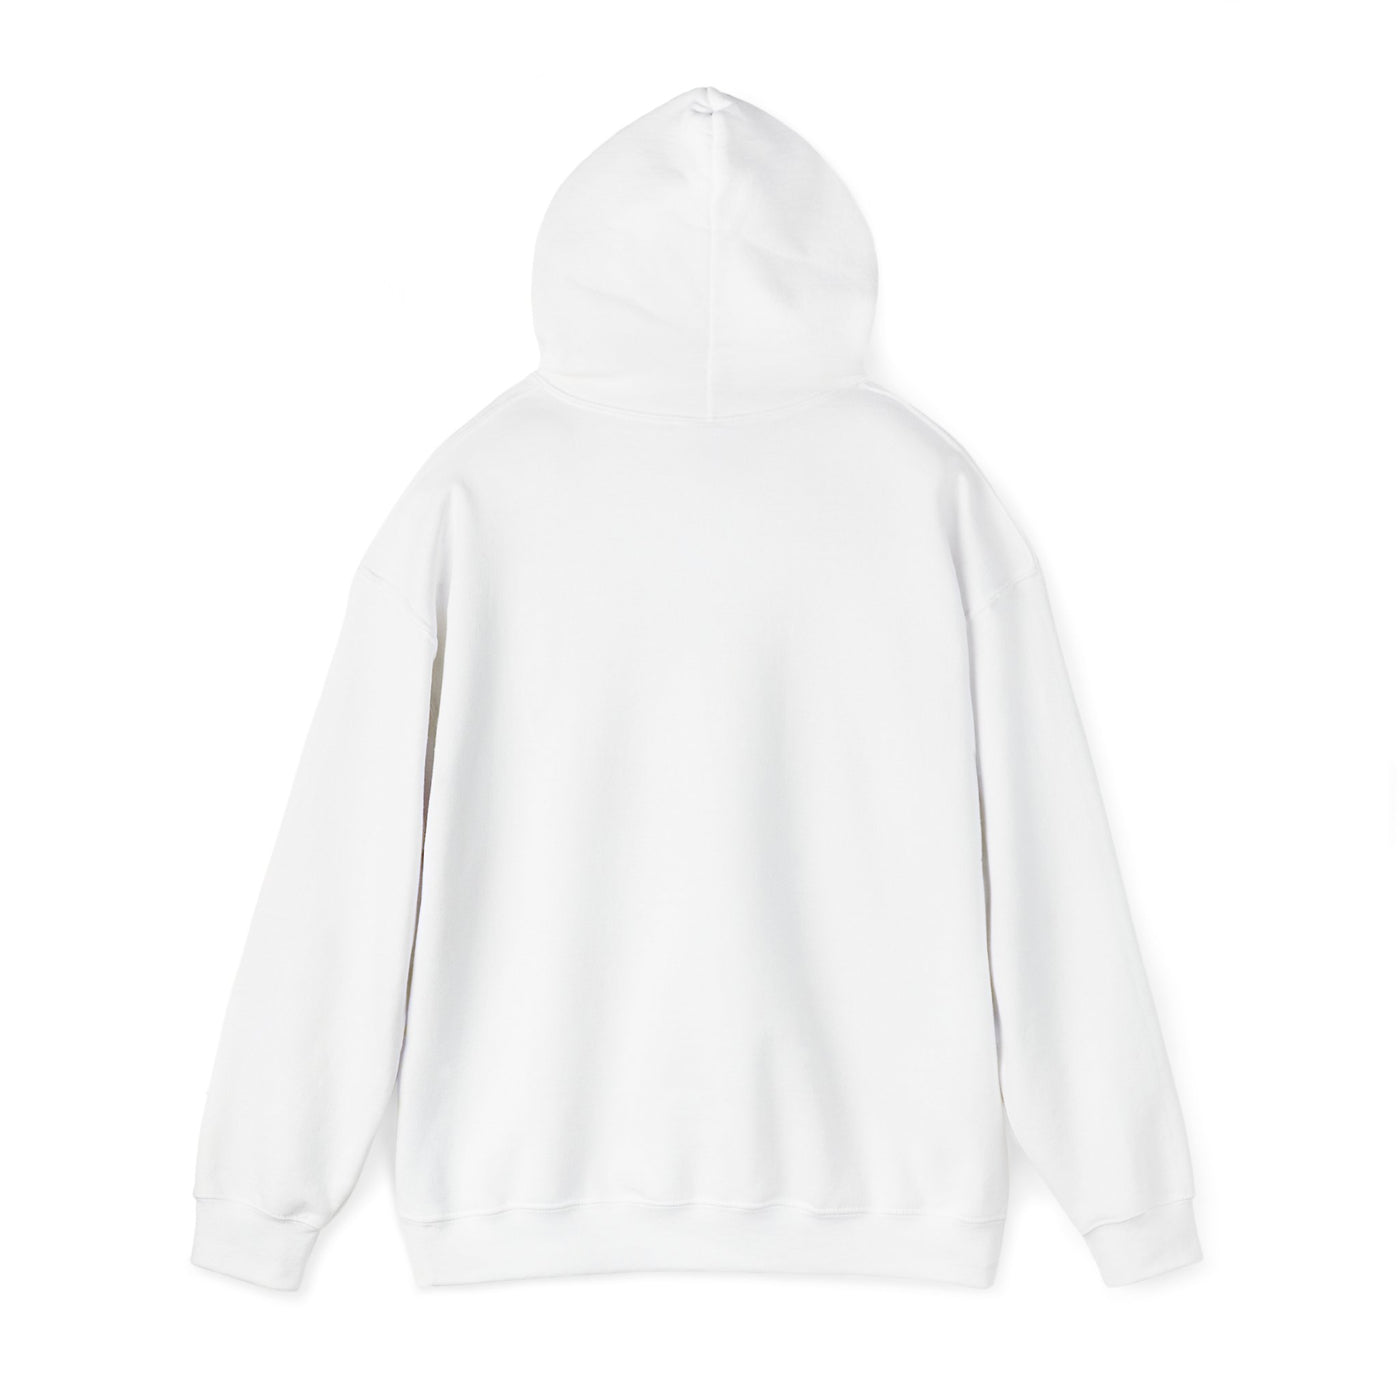 BALANCING ACT ACCOUNTANT Unisex Heavy Blend™ Hooded Sweatshirt